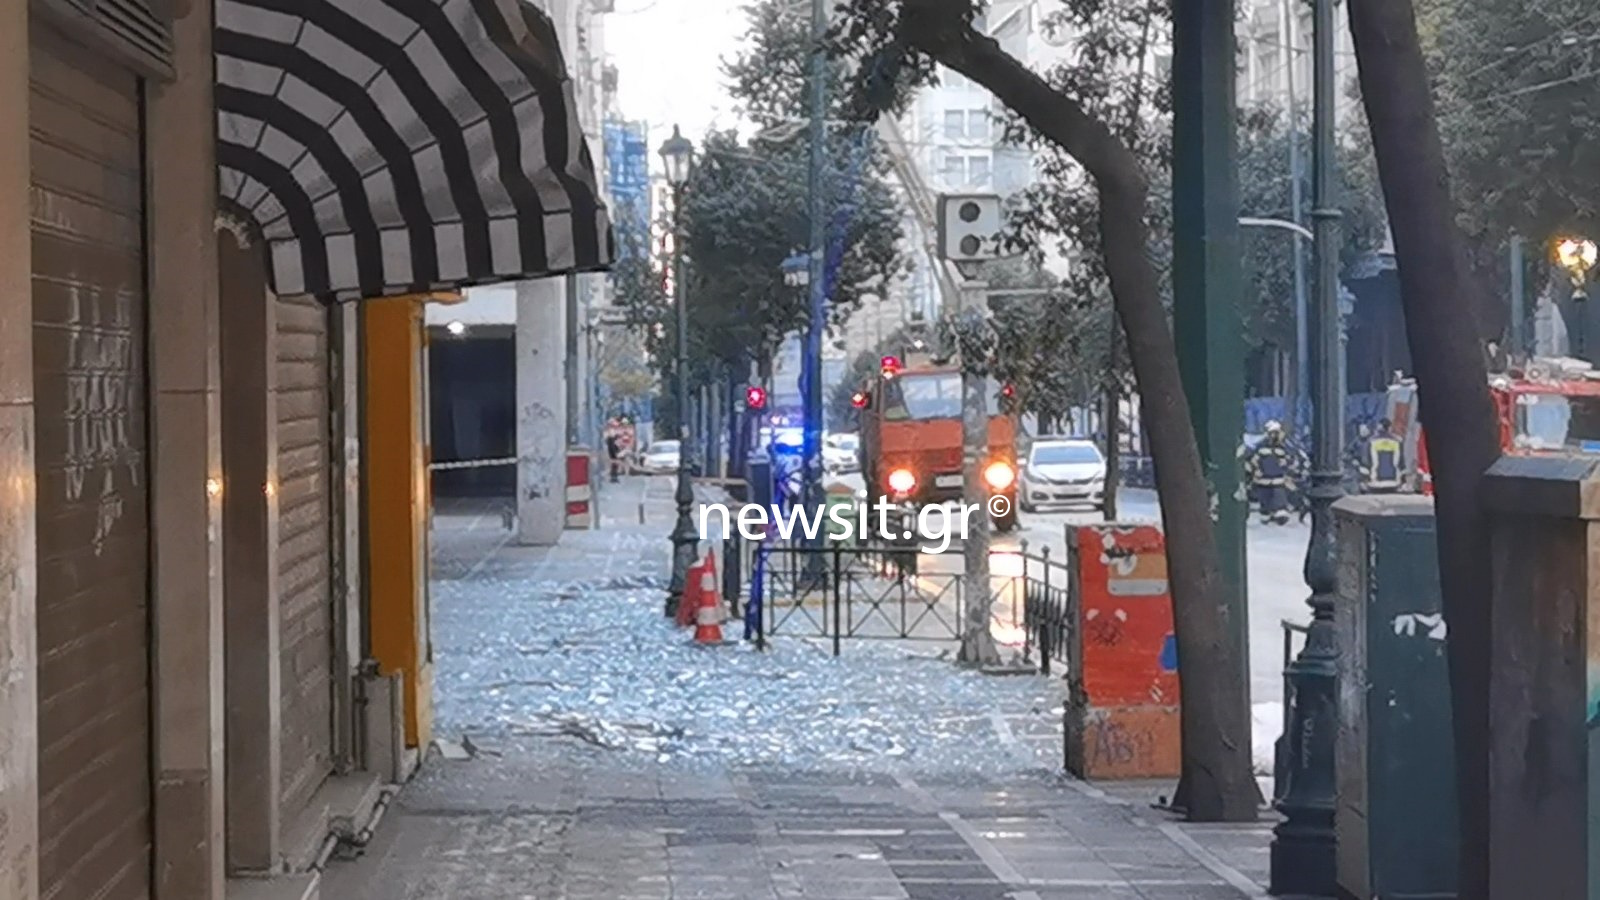 Έκρηξη βόμβας στο υπουργείο Εργασίας: Κλειστή παραμένει η Σταδίου – Συναγερμός στην Αντιτρομοκρατική